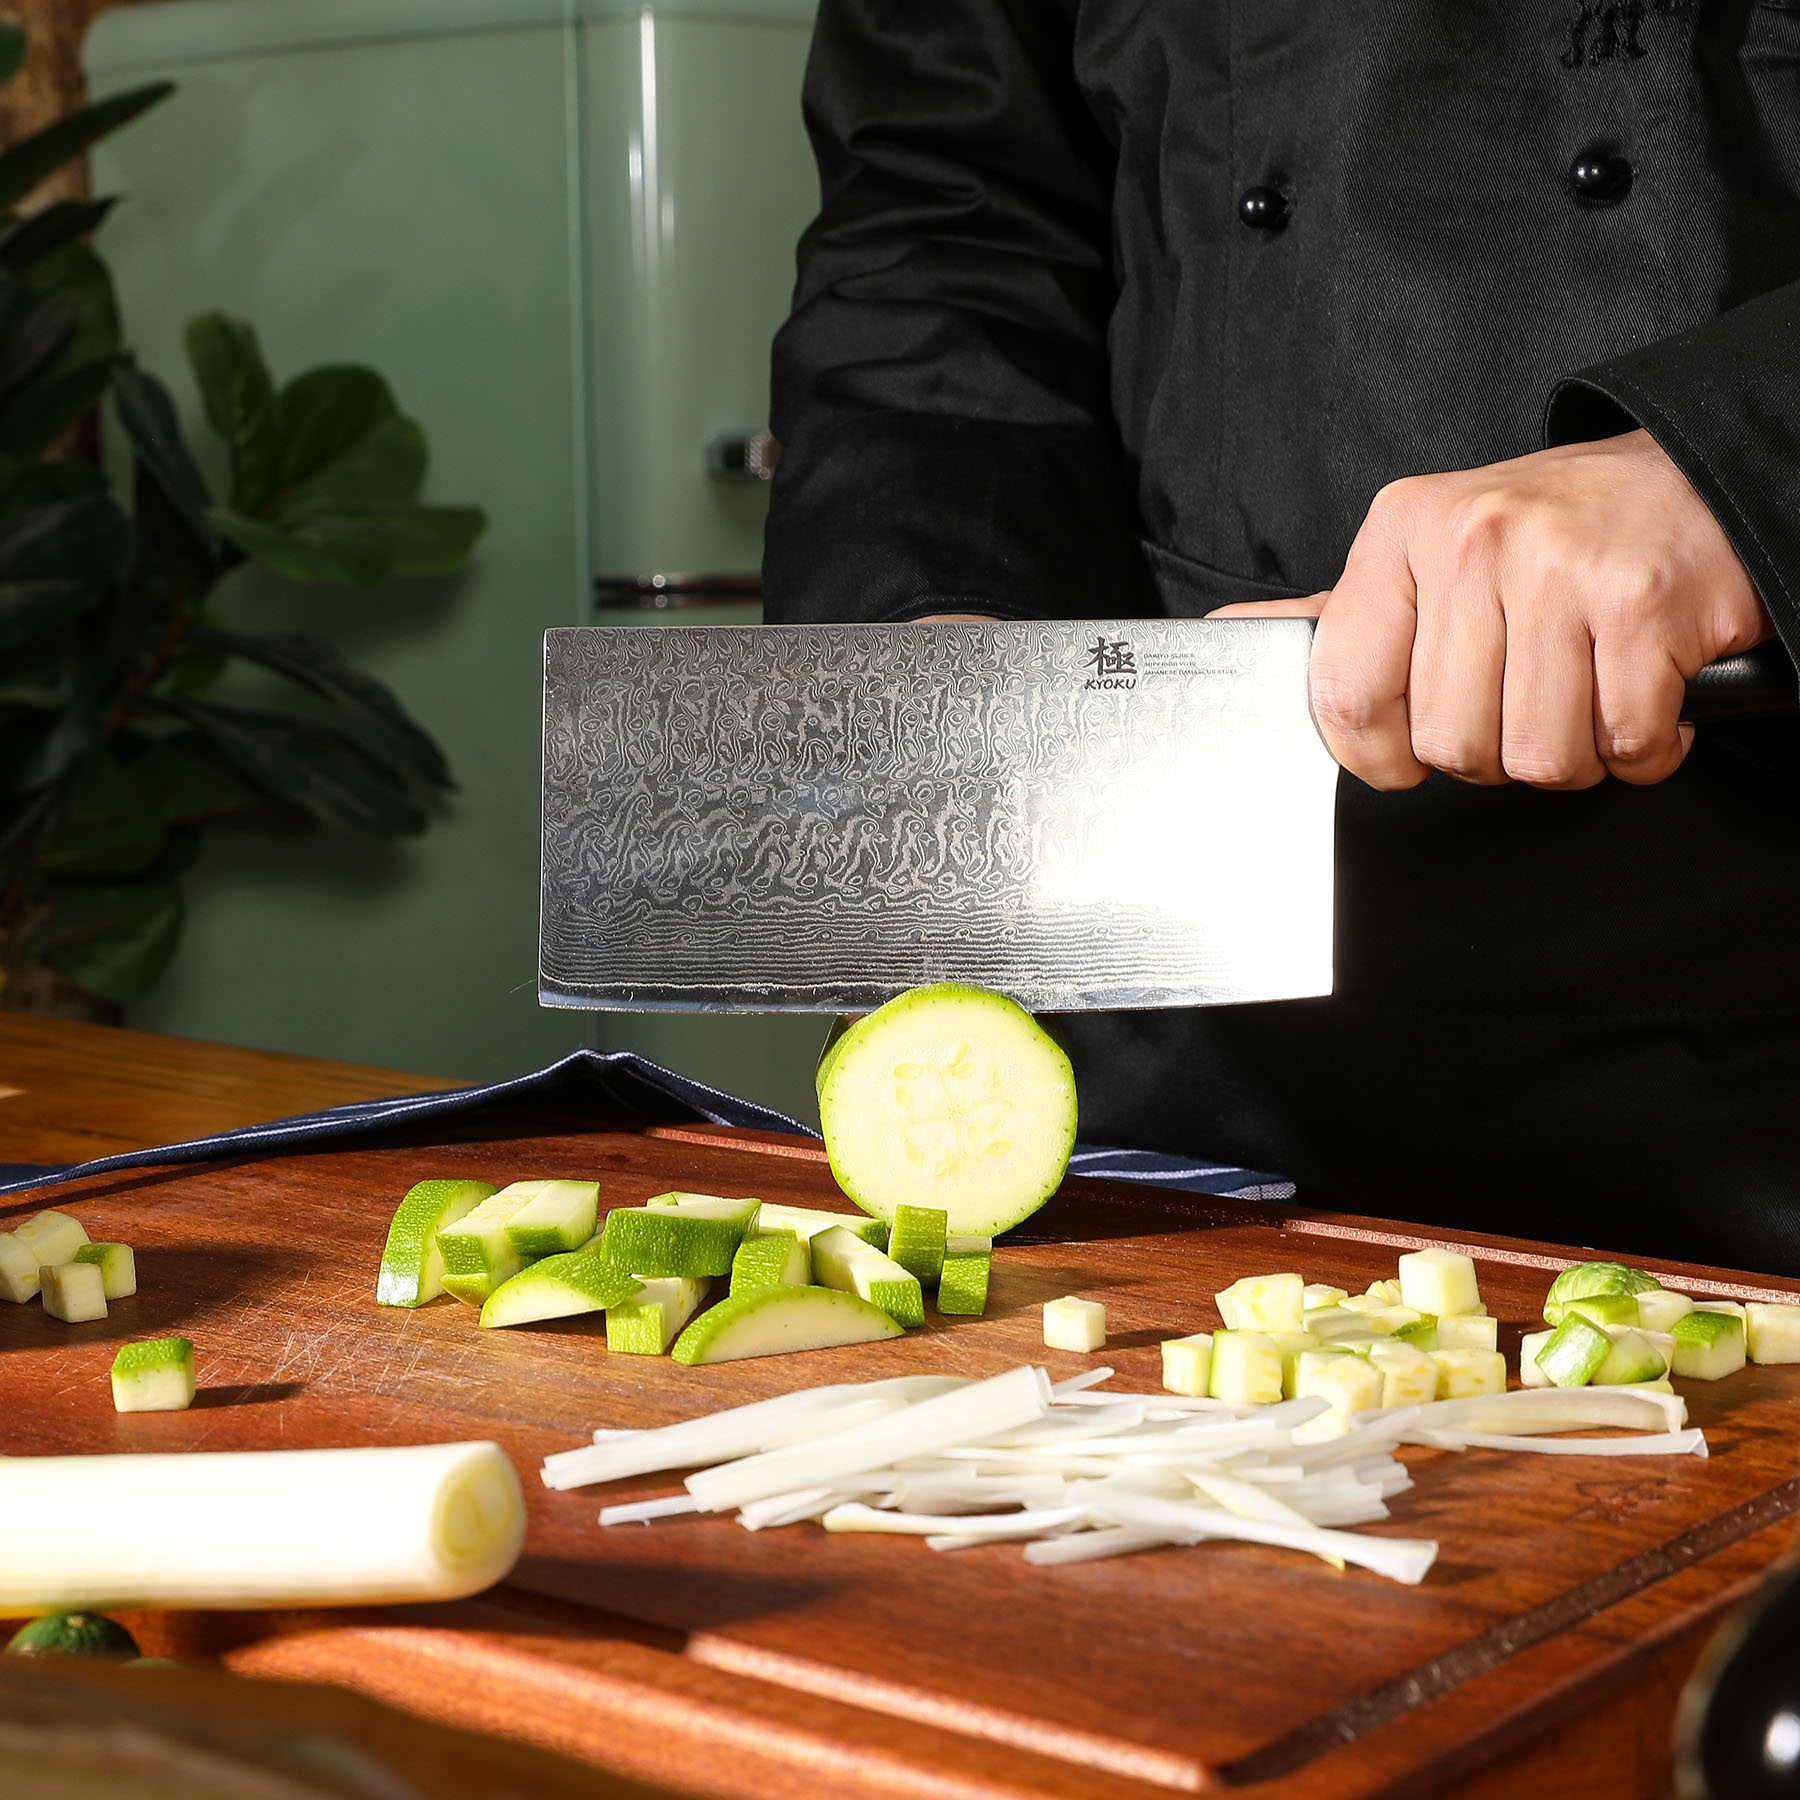 Kyoku Japanese Cleaver Knives | Samurai Series | Kyoku Knives